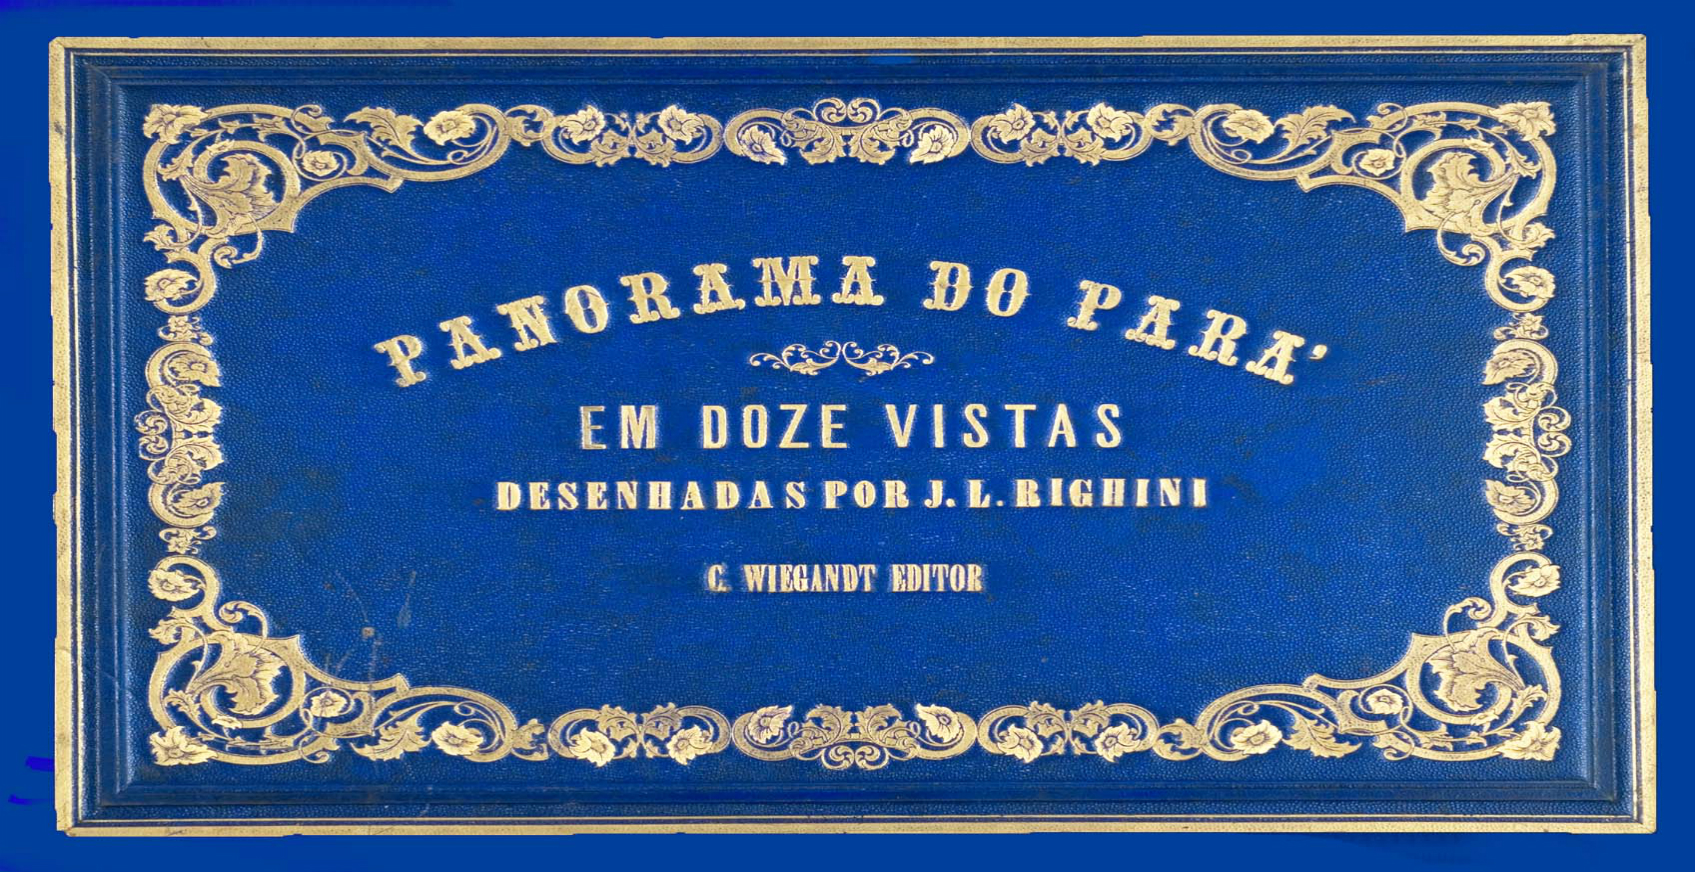 A Capa da Obra Panorama do Pará em Doze Vistas